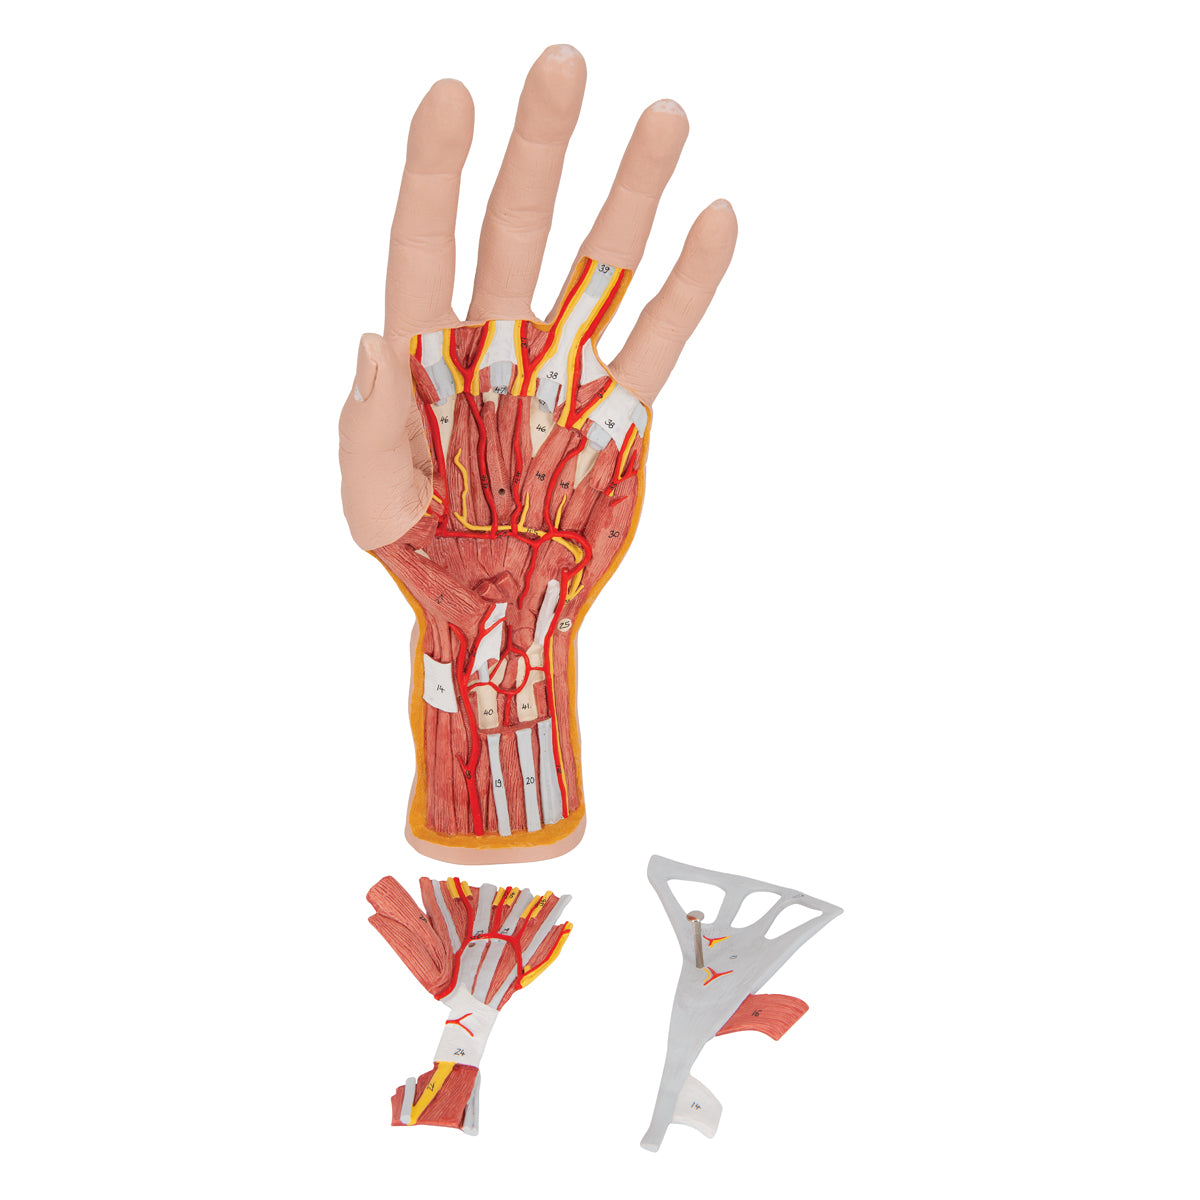 Komplett handmodell med hud, muskler, senor, kärl och nerver - kan delas upp i 3 delar